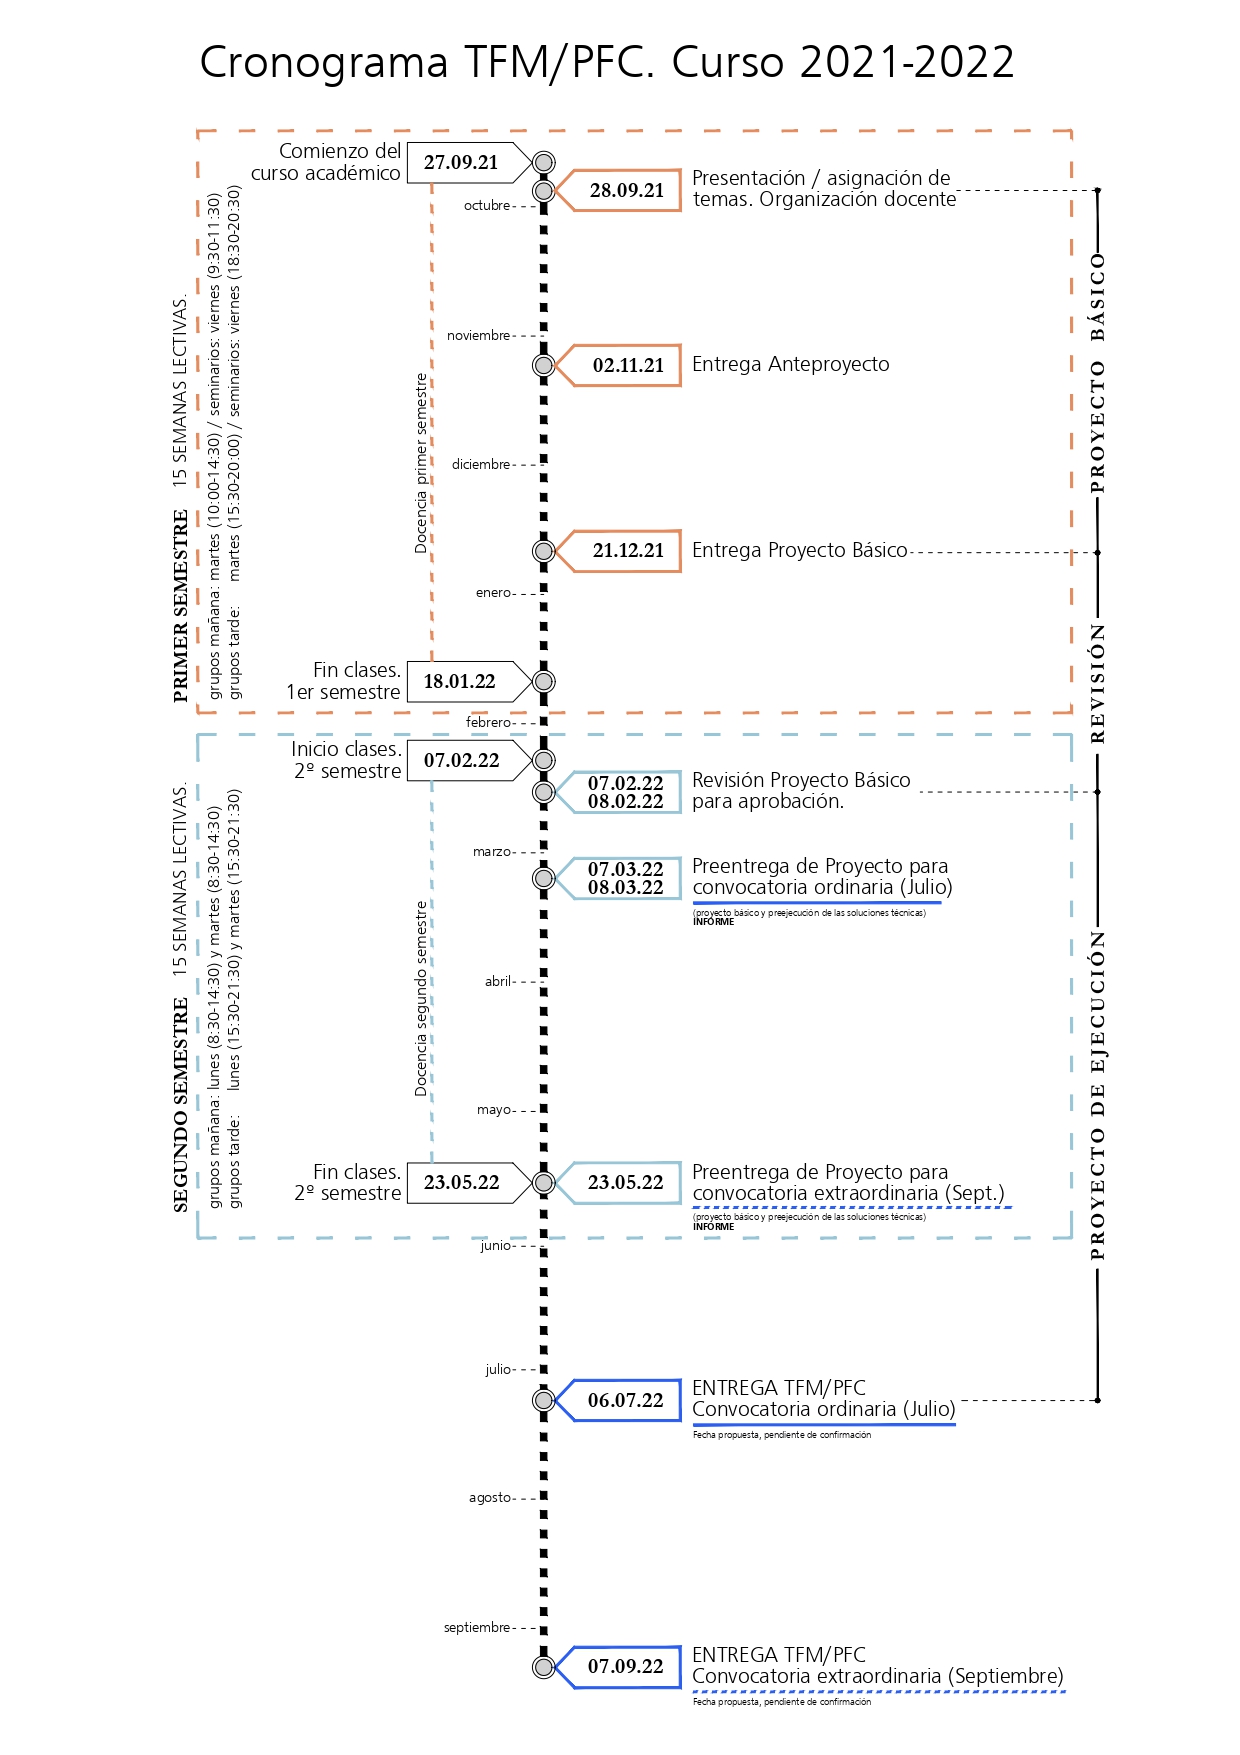 Imagen del Cronograma del Trabajo Fin de Máster en el curso 2021-2022